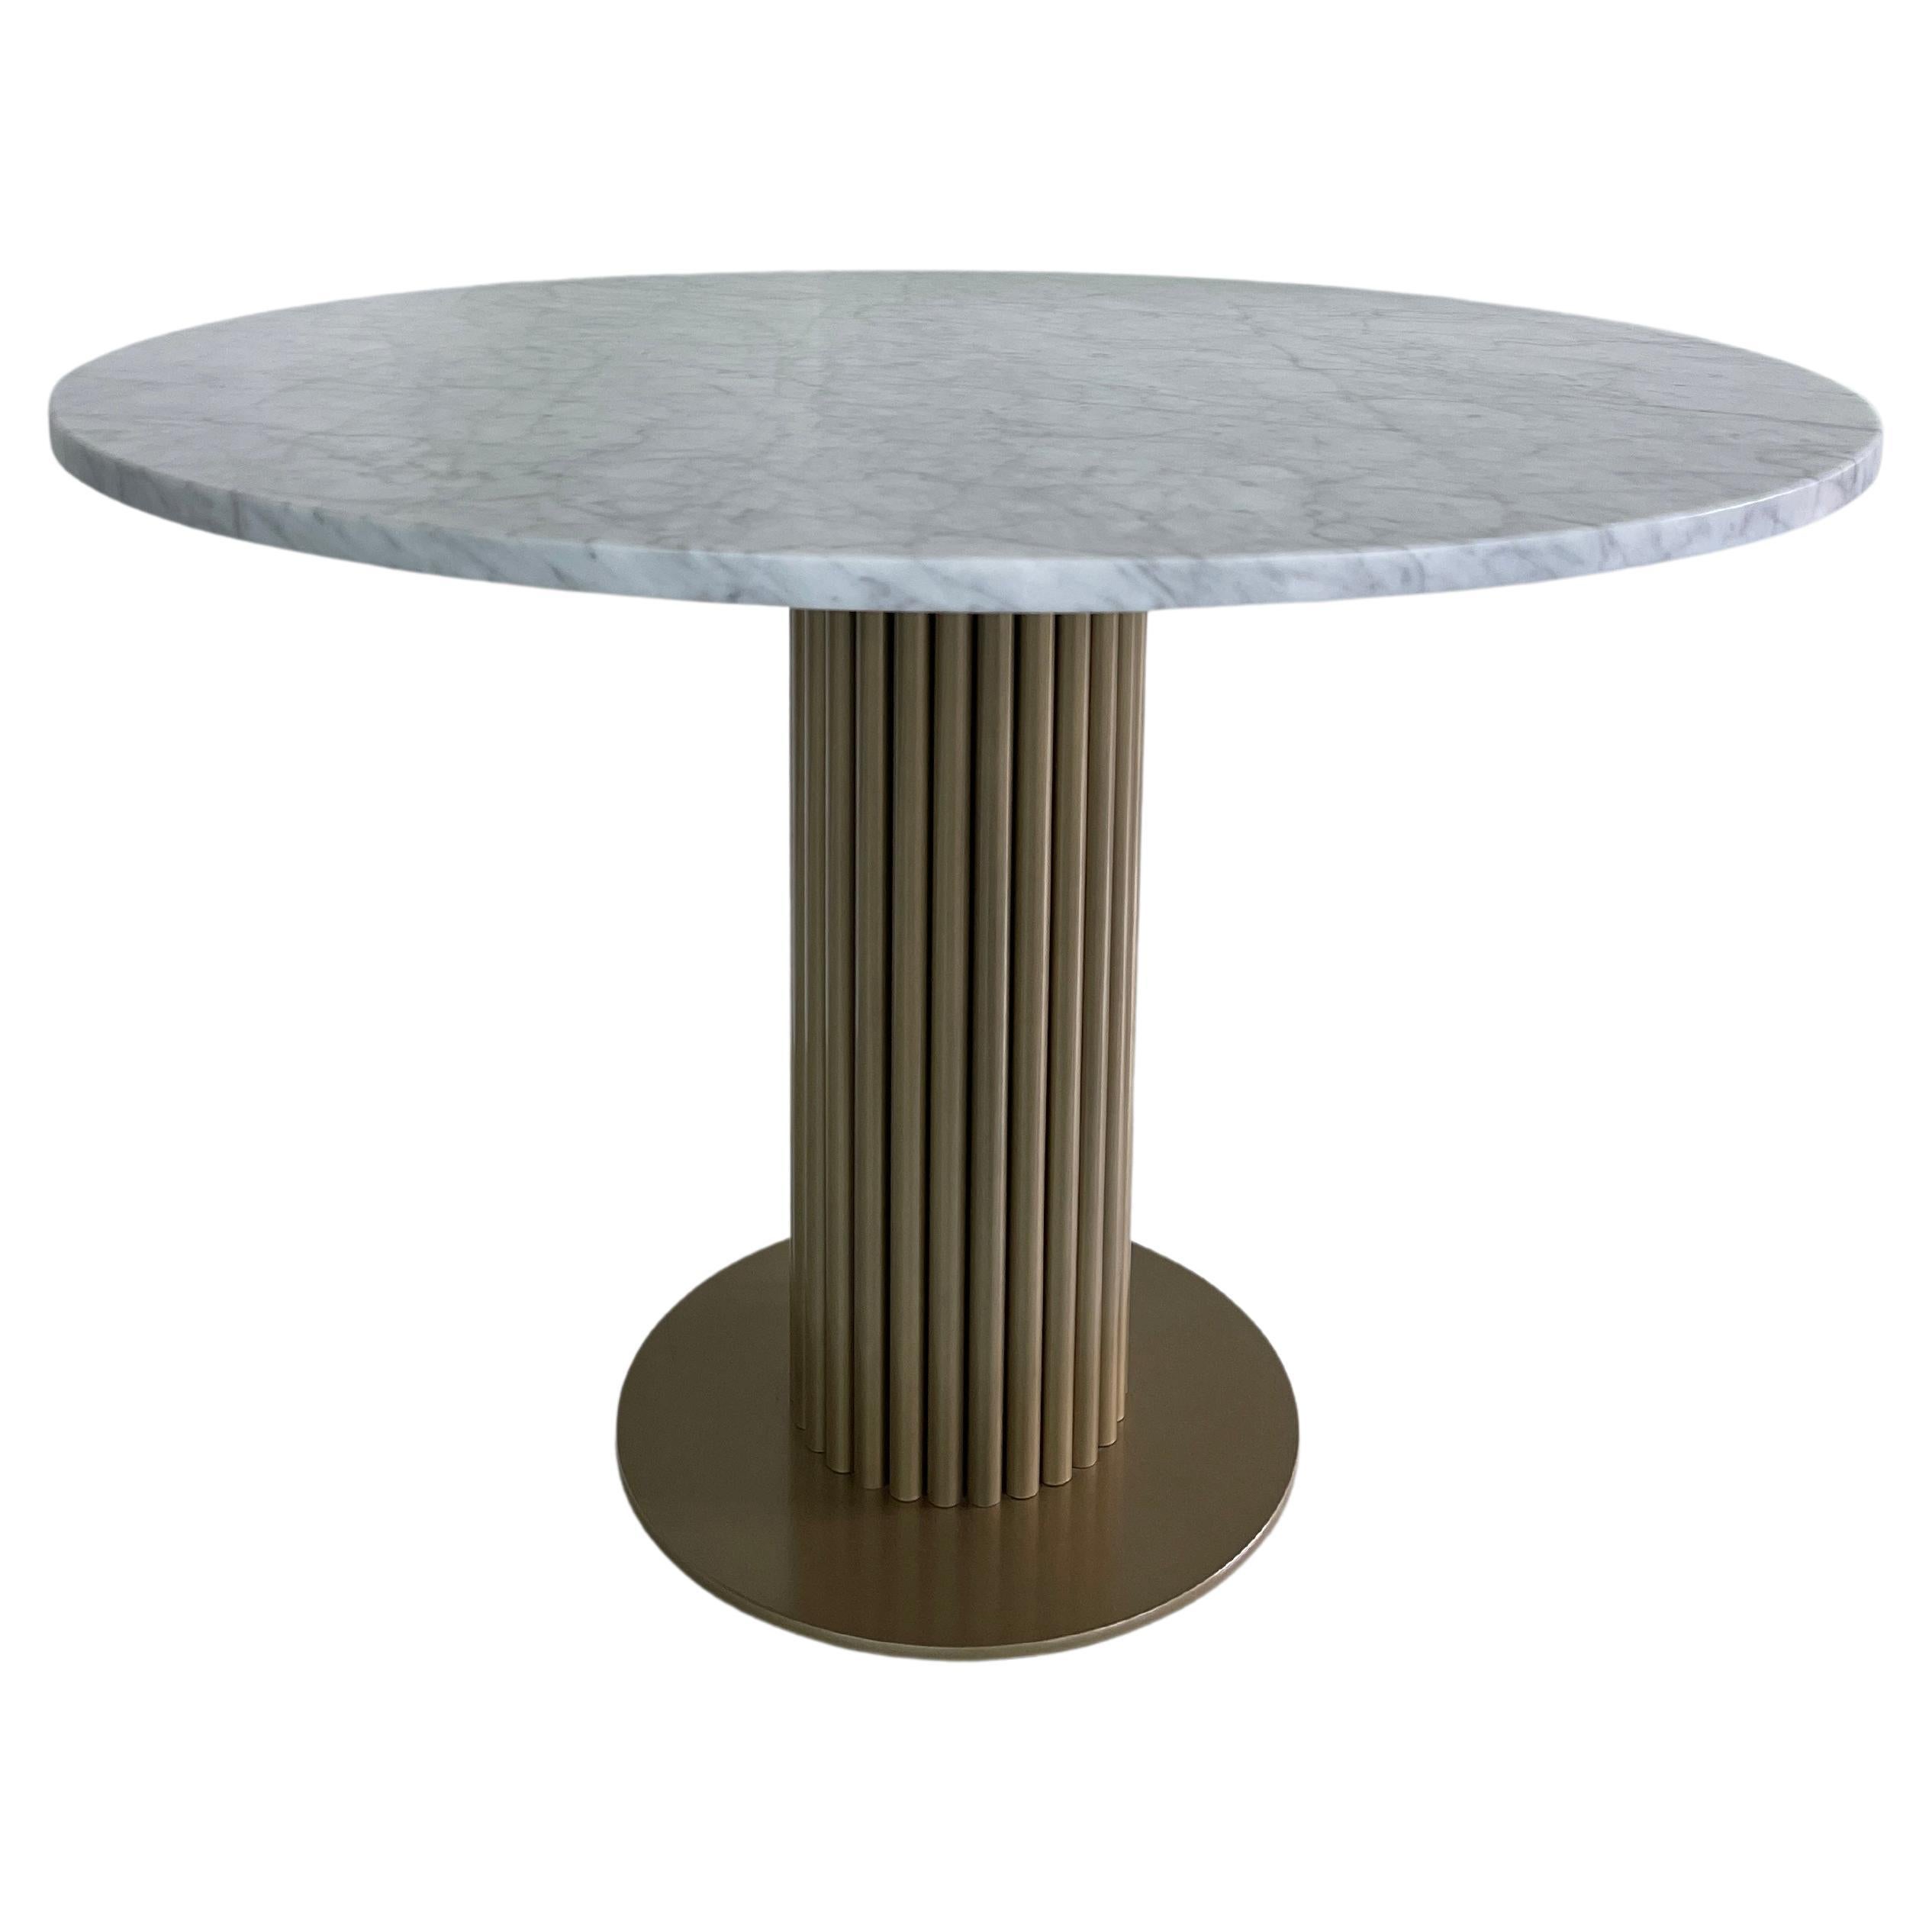 Wittmann Miles White Carrara Marble Table Designed by Sebastian Herkner in Stock